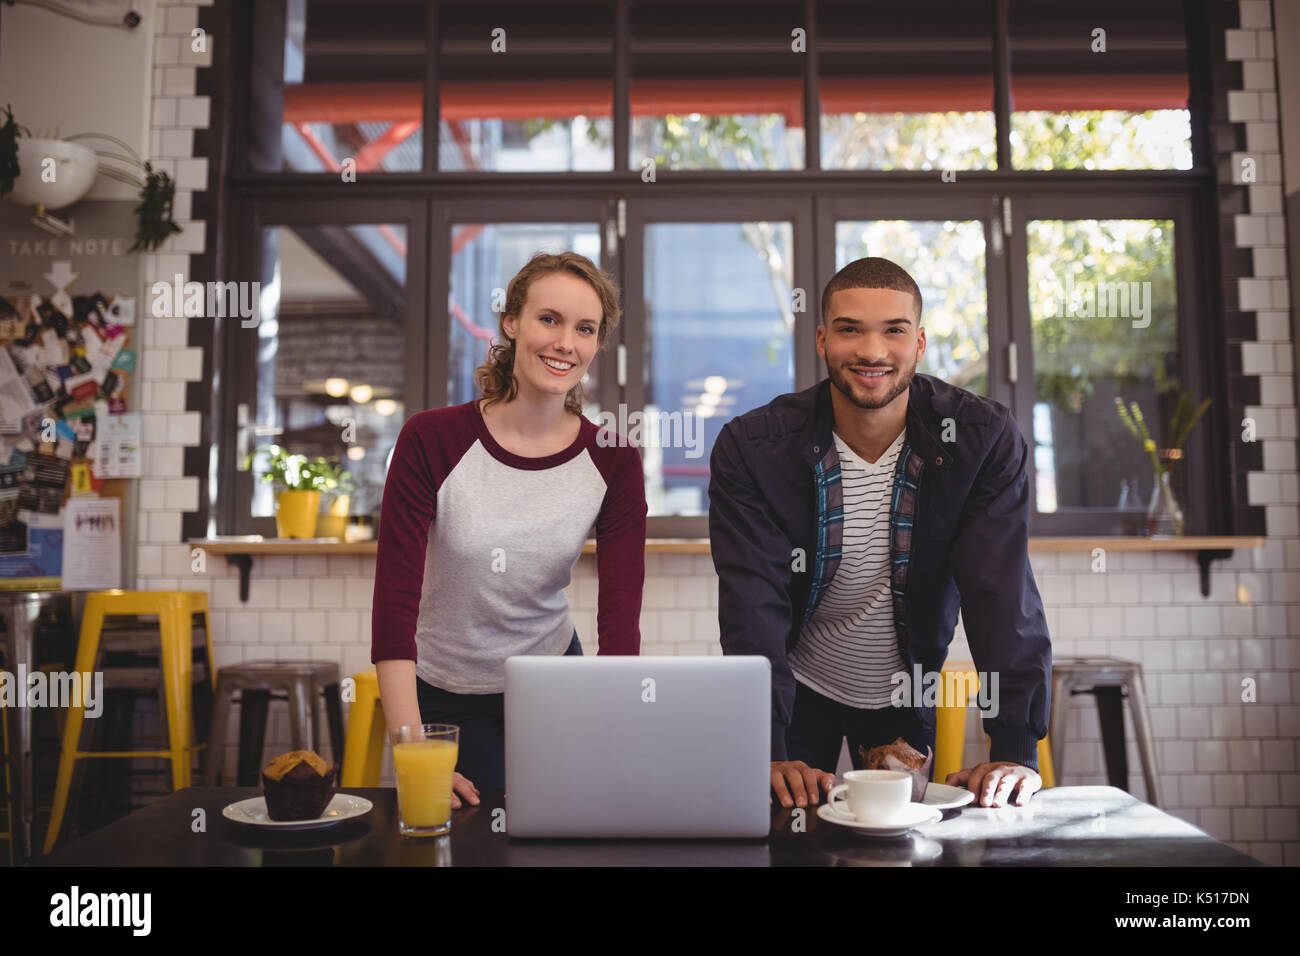 Portrait von lächelnden jungen Mann und Frau mit Laptop auf dem Tisch im Café Stockfoto